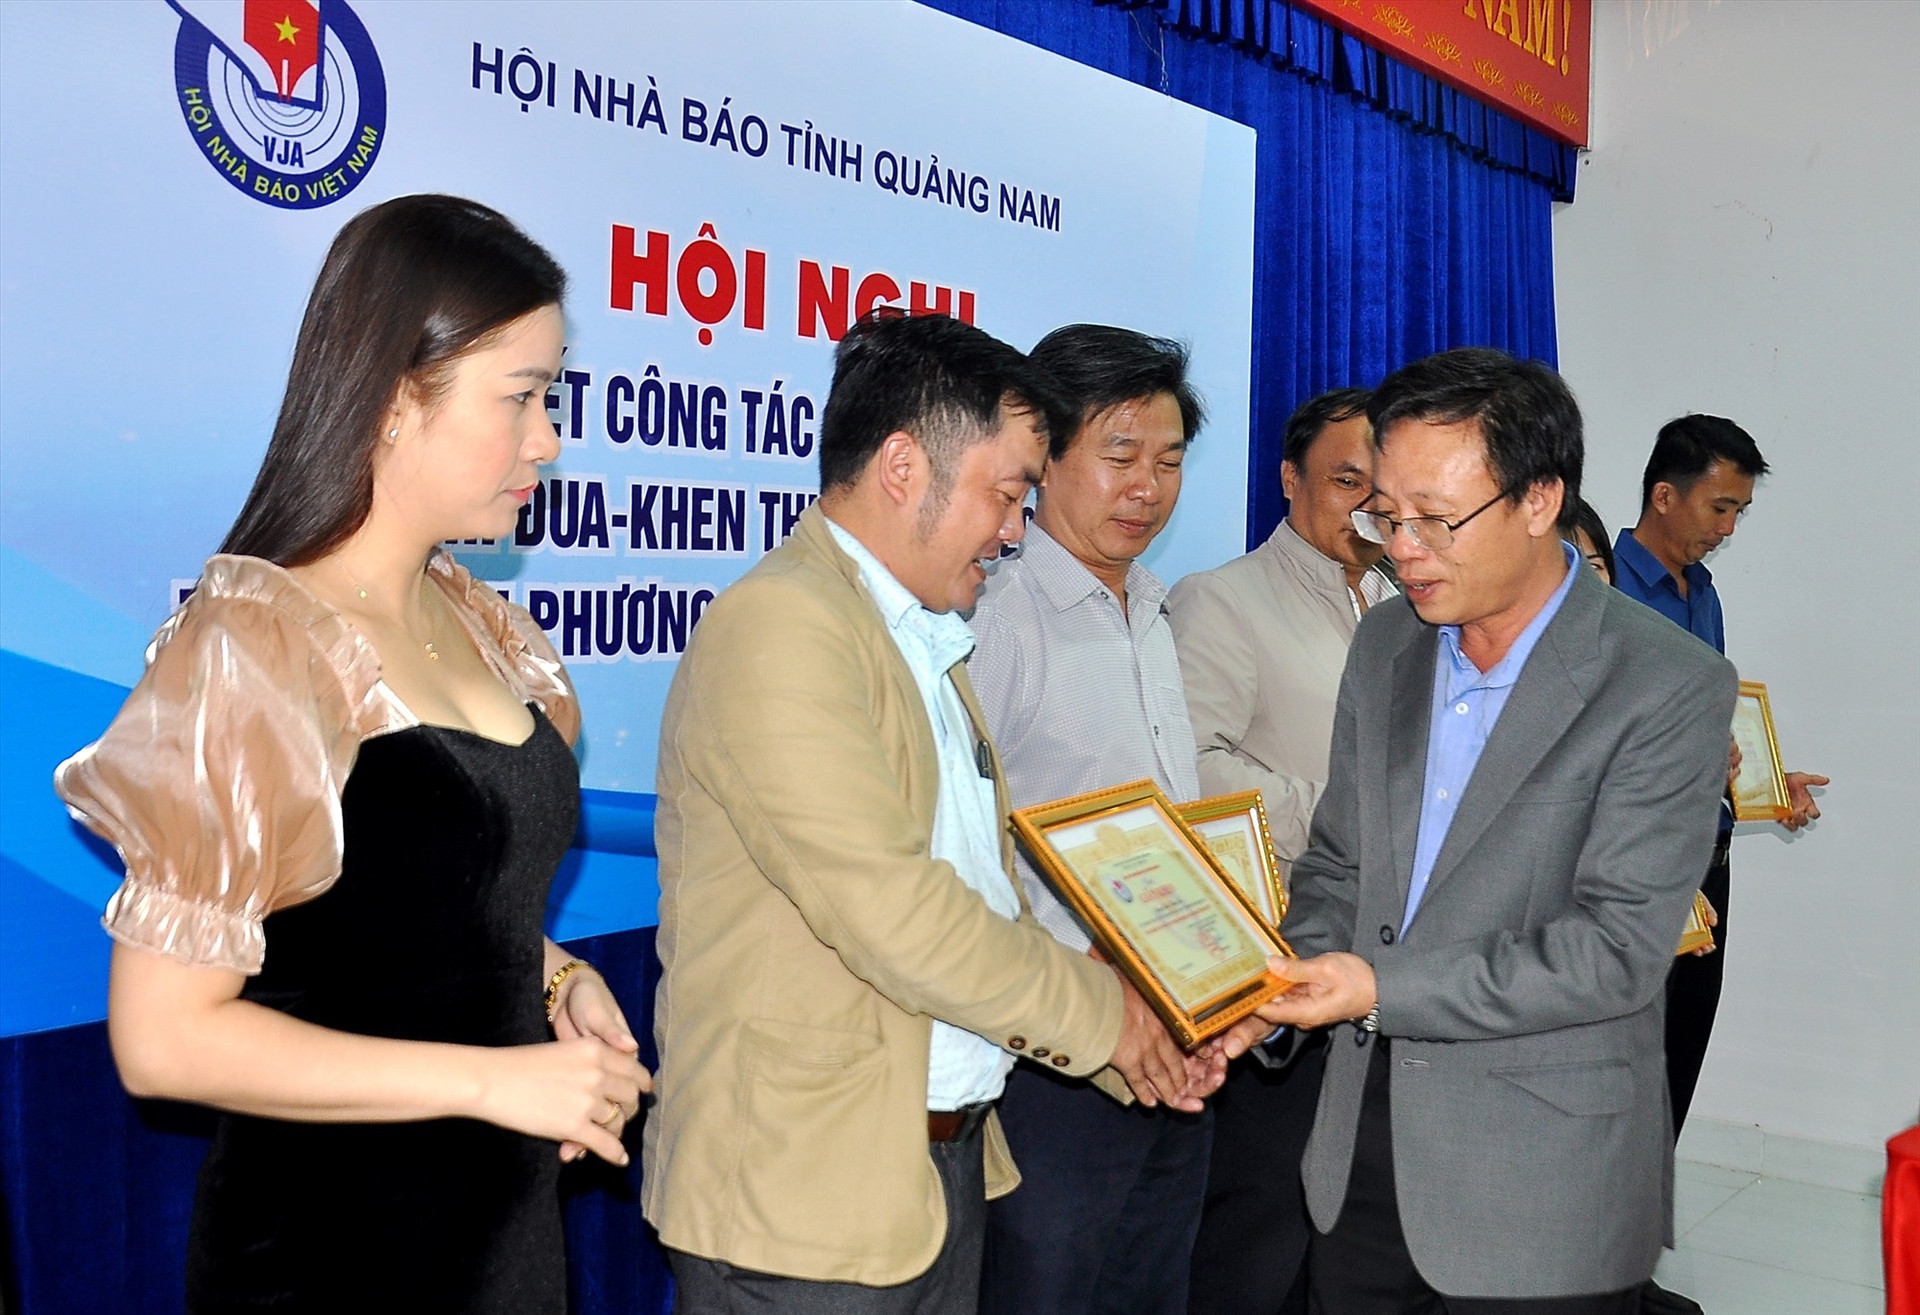 Nhà báo Lê Văn Nhi tặng giấy khen cho các hội viên có thành tích xuất sắc trong công tác hội năm 2019. Ảnh: VINH ANH